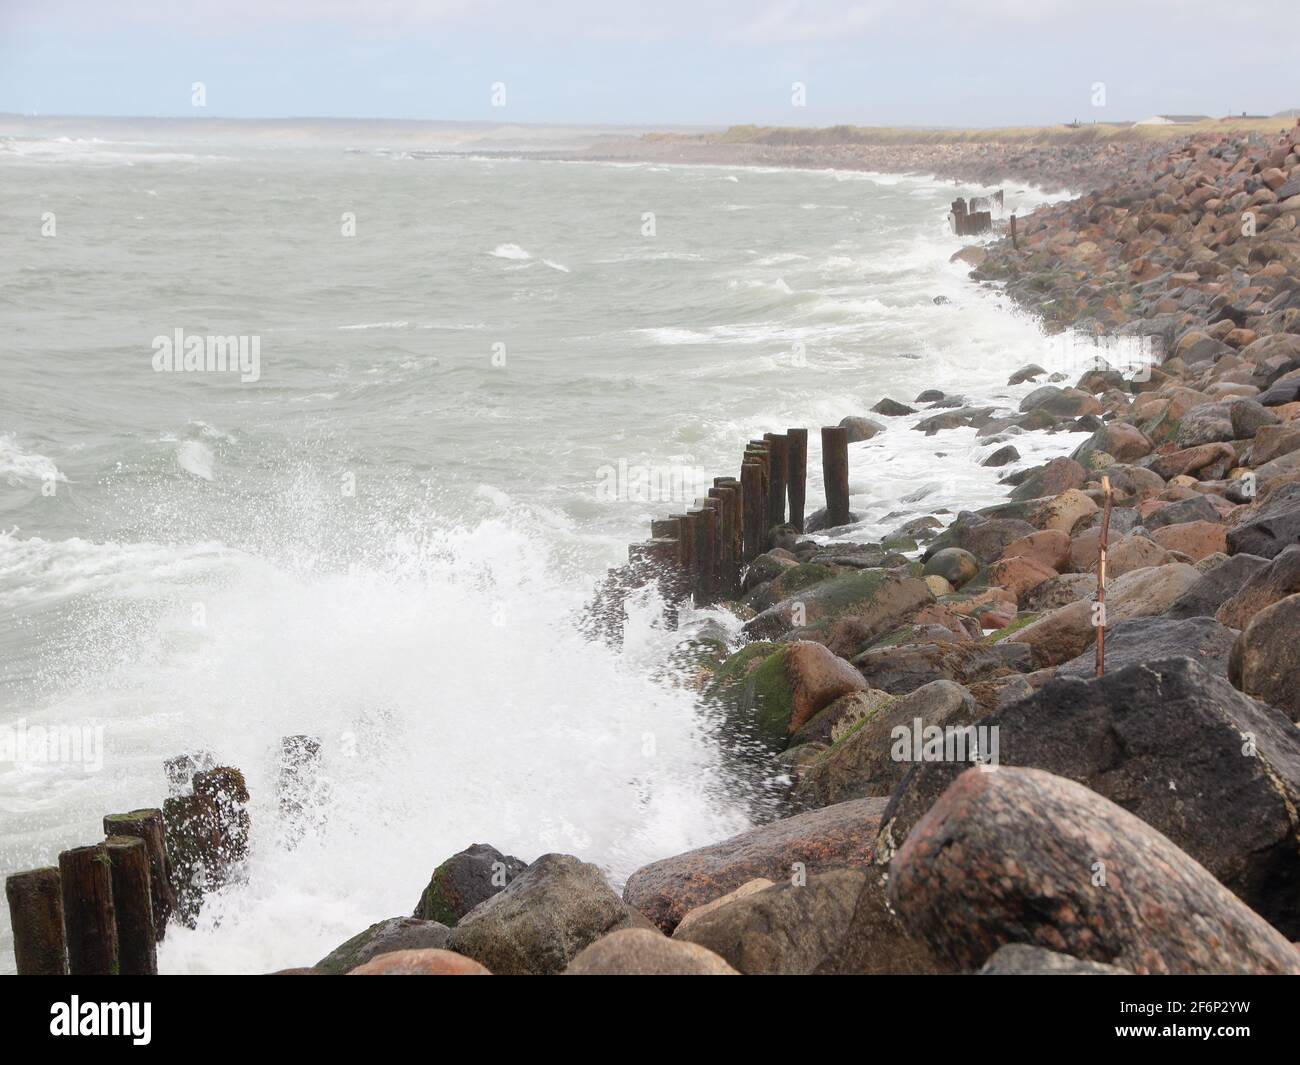 Crashing fierce waves against black rocks at coast Stock Photo